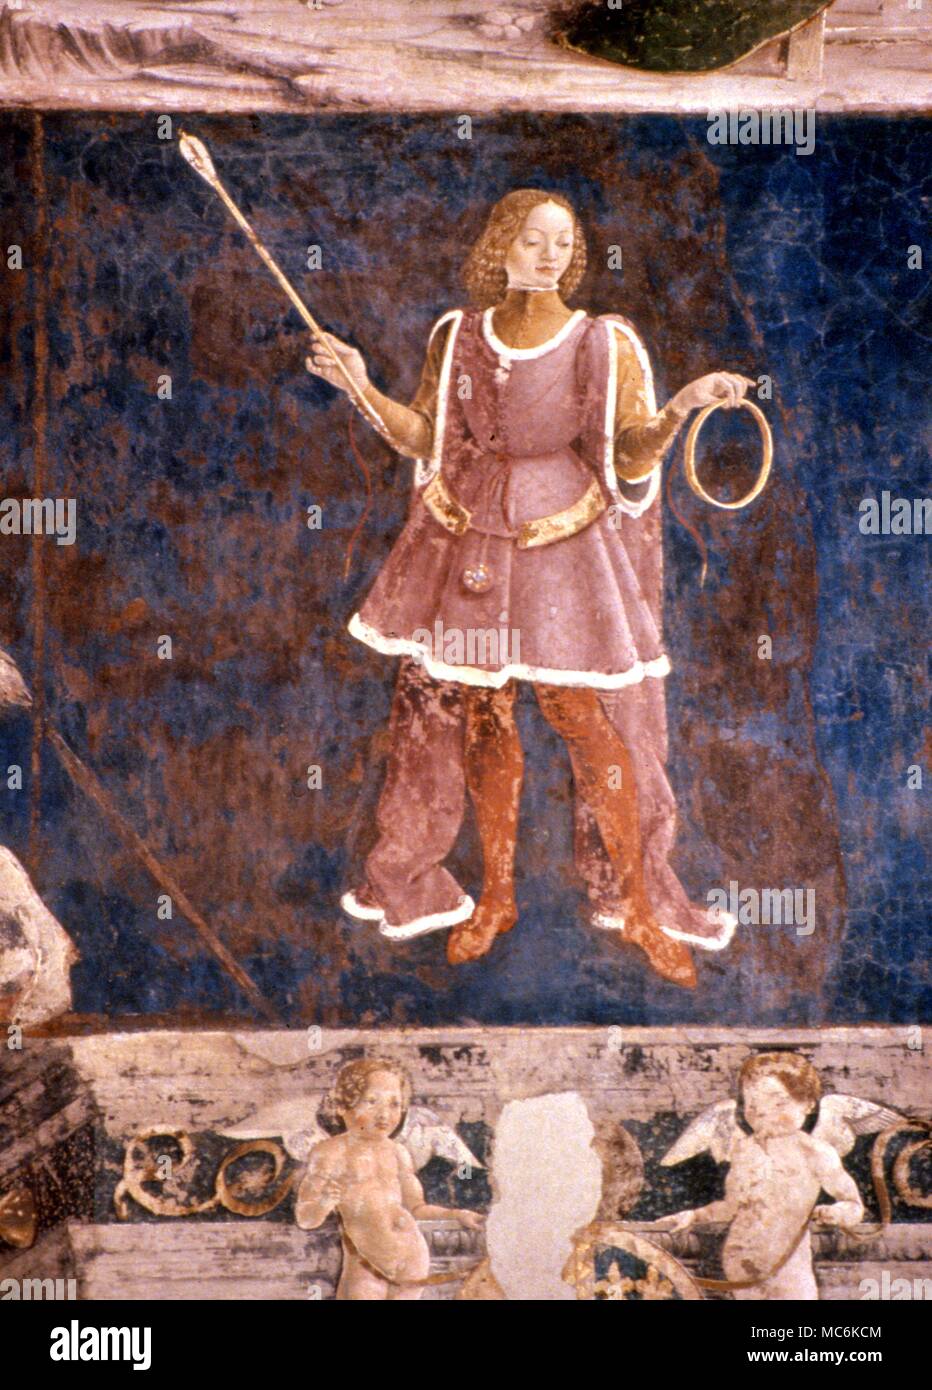 Astrologia italiano Ferrara Uomo con bacchetta immagine zodiacale dalla serie decanates nel Palazzo Schiffanoi Ferrara Foto Stock